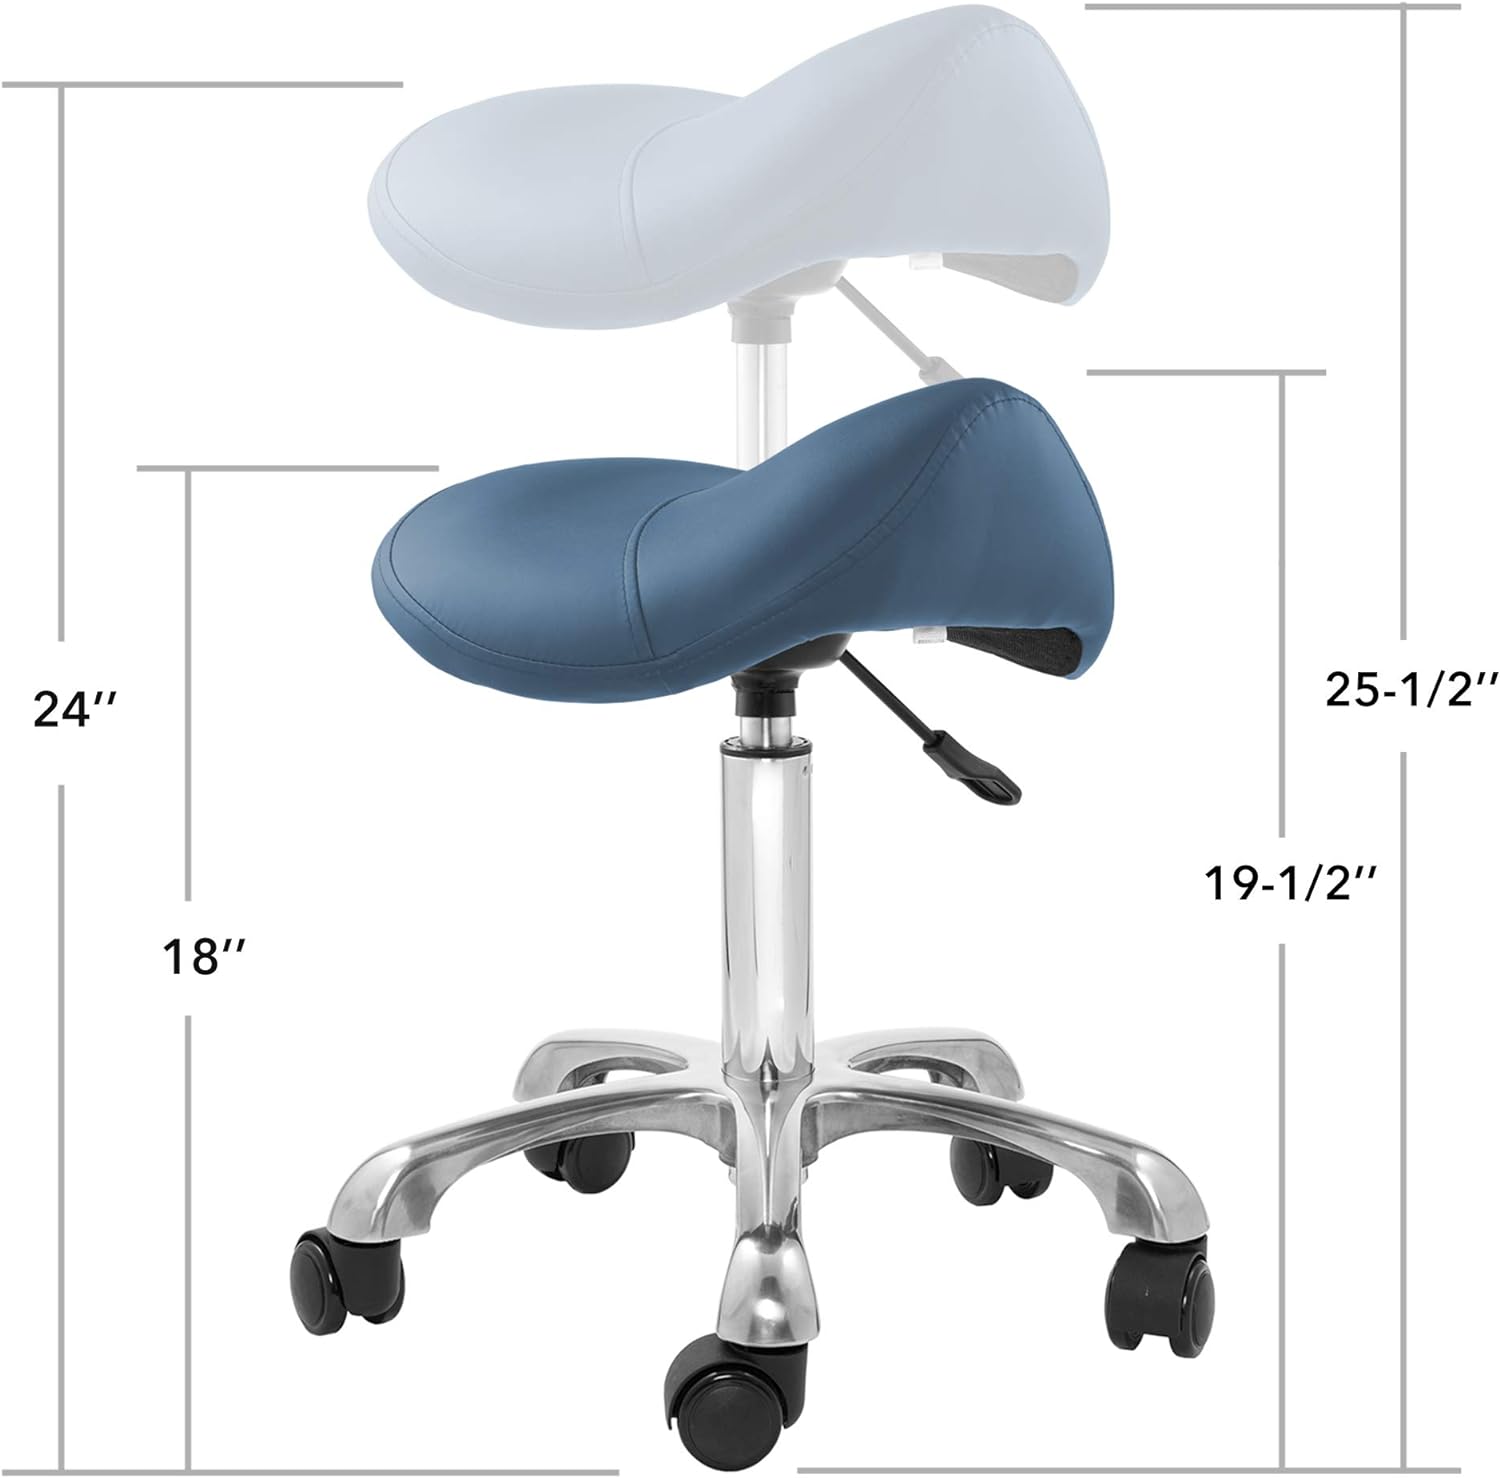 Taburete ergonómico profesional, azul, asiento hidráulico ajustable, salón de